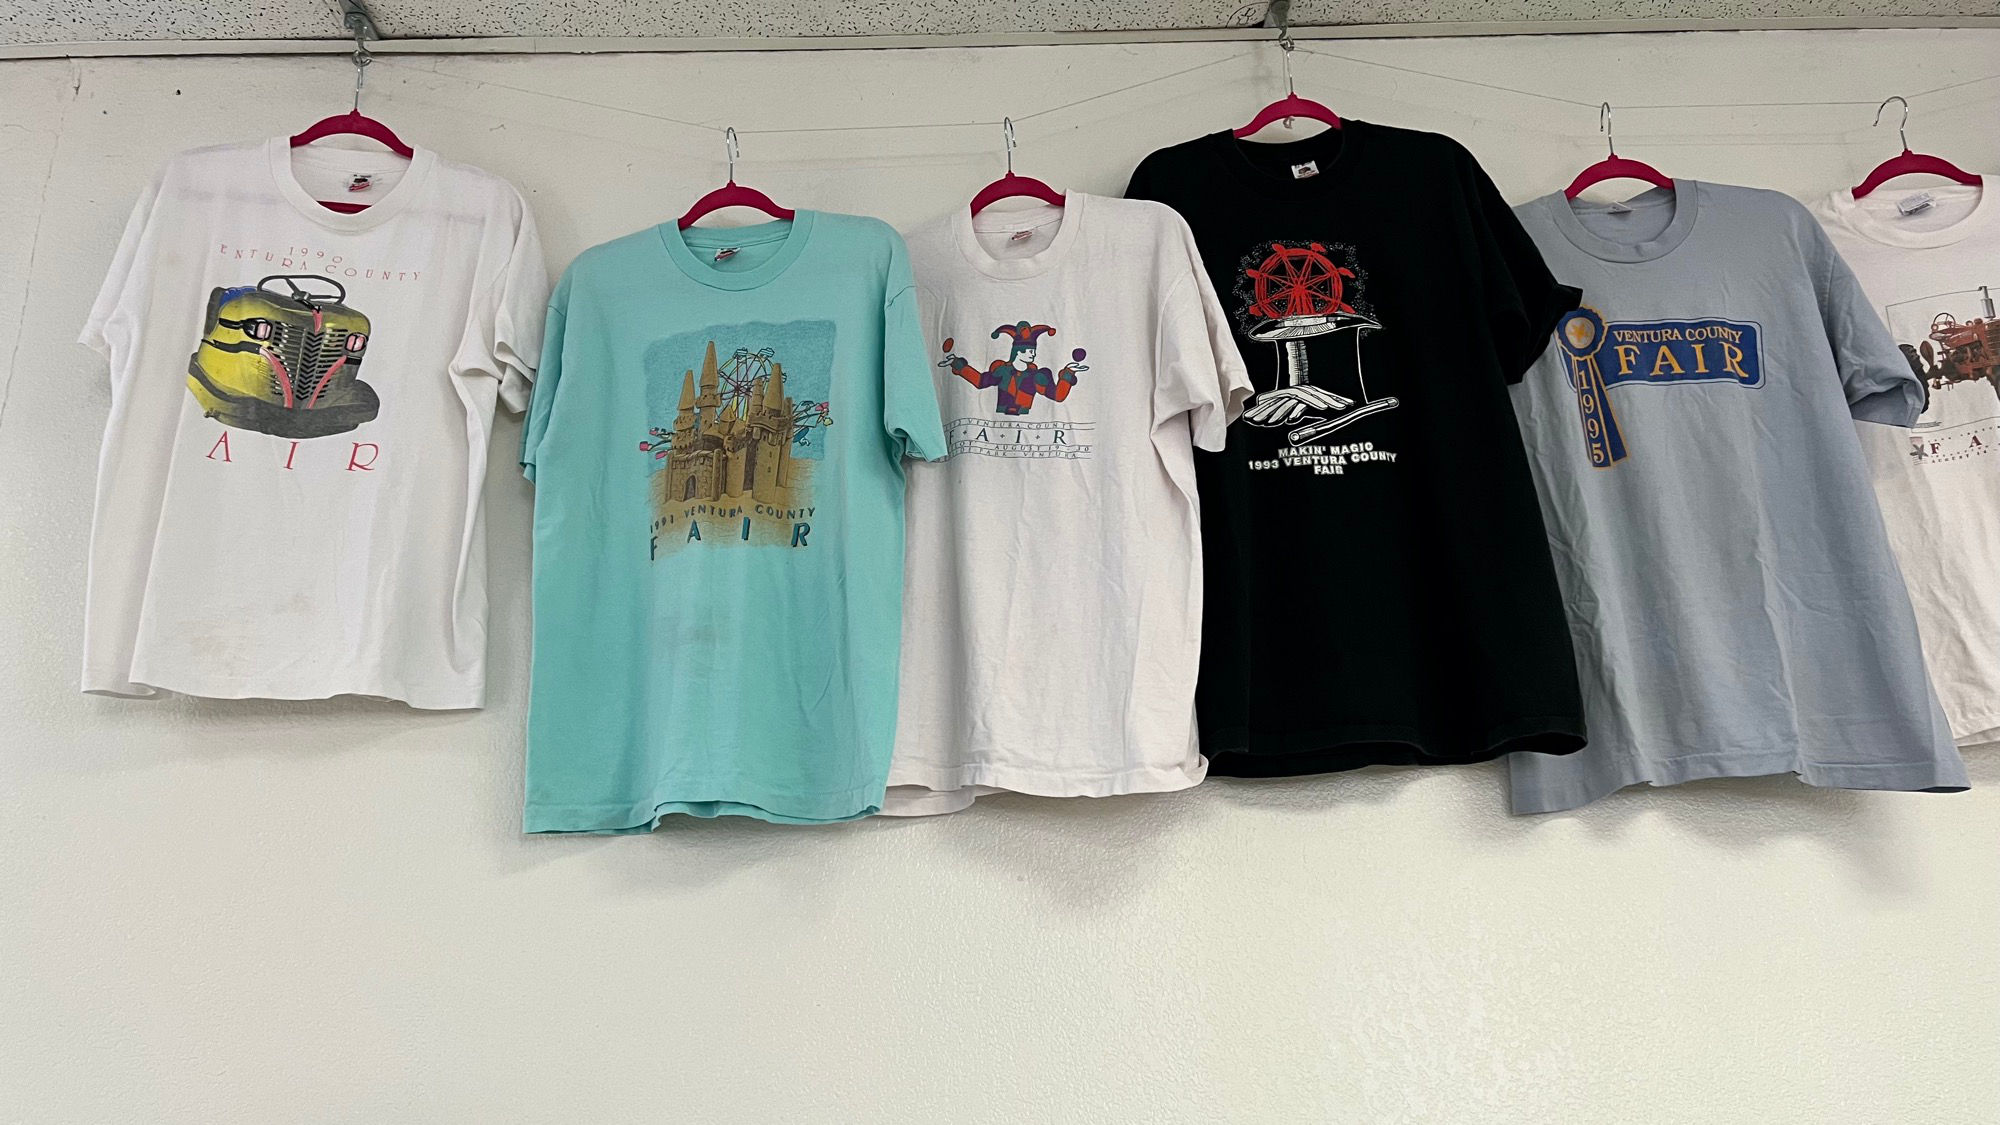 Ventura County Fair T-Shirts 1990-1995